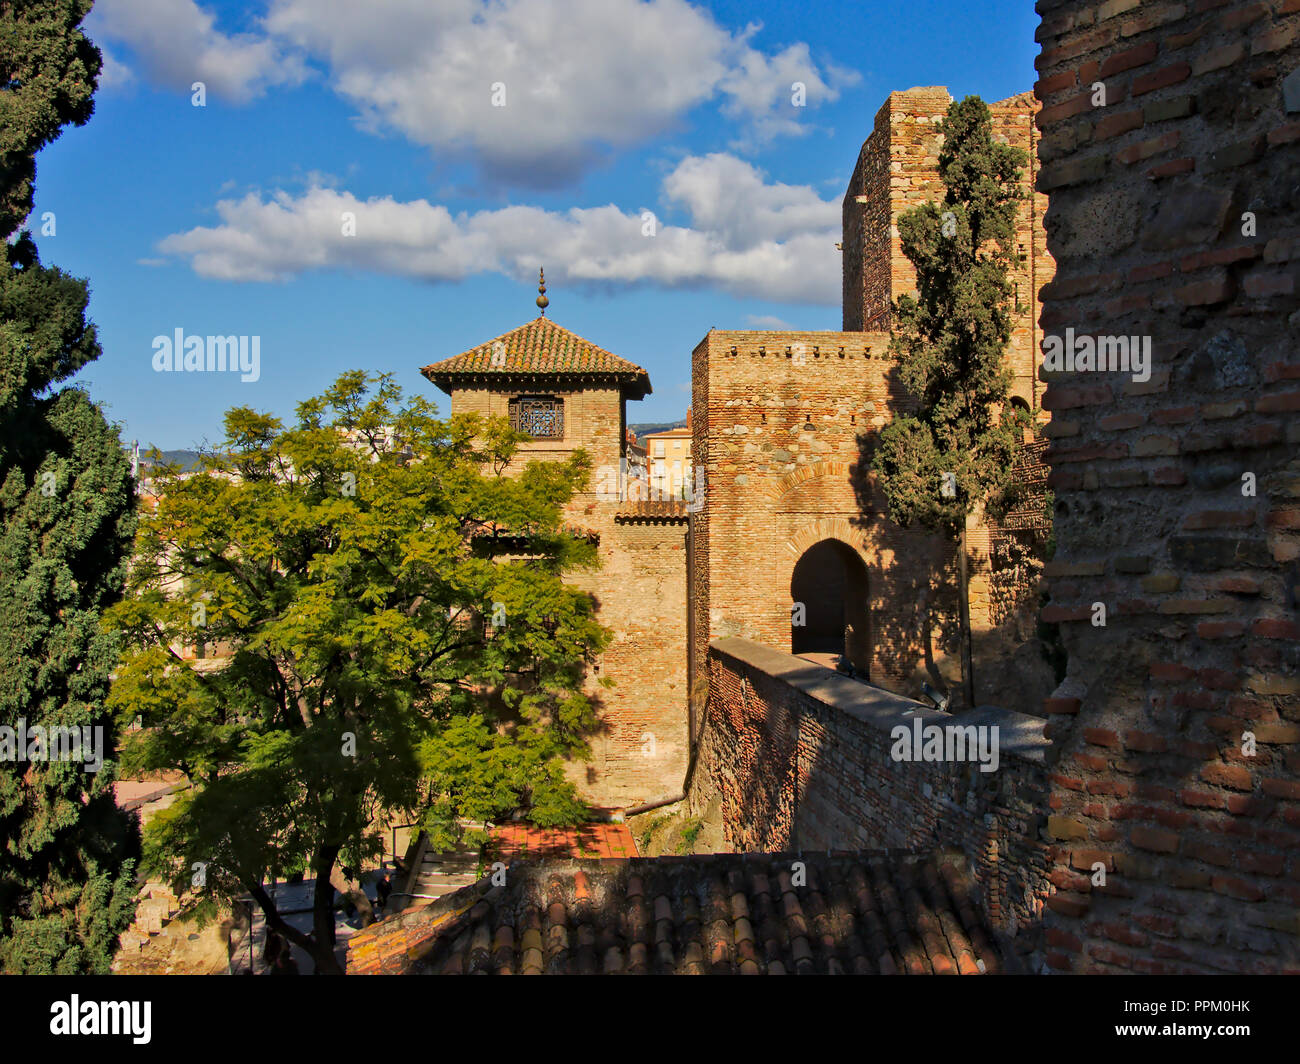 Tour fortifiée avec port d'entrée au château maure Alcazaba de Málaga, Espagne sur une journée ensoleillée Banque D'Images